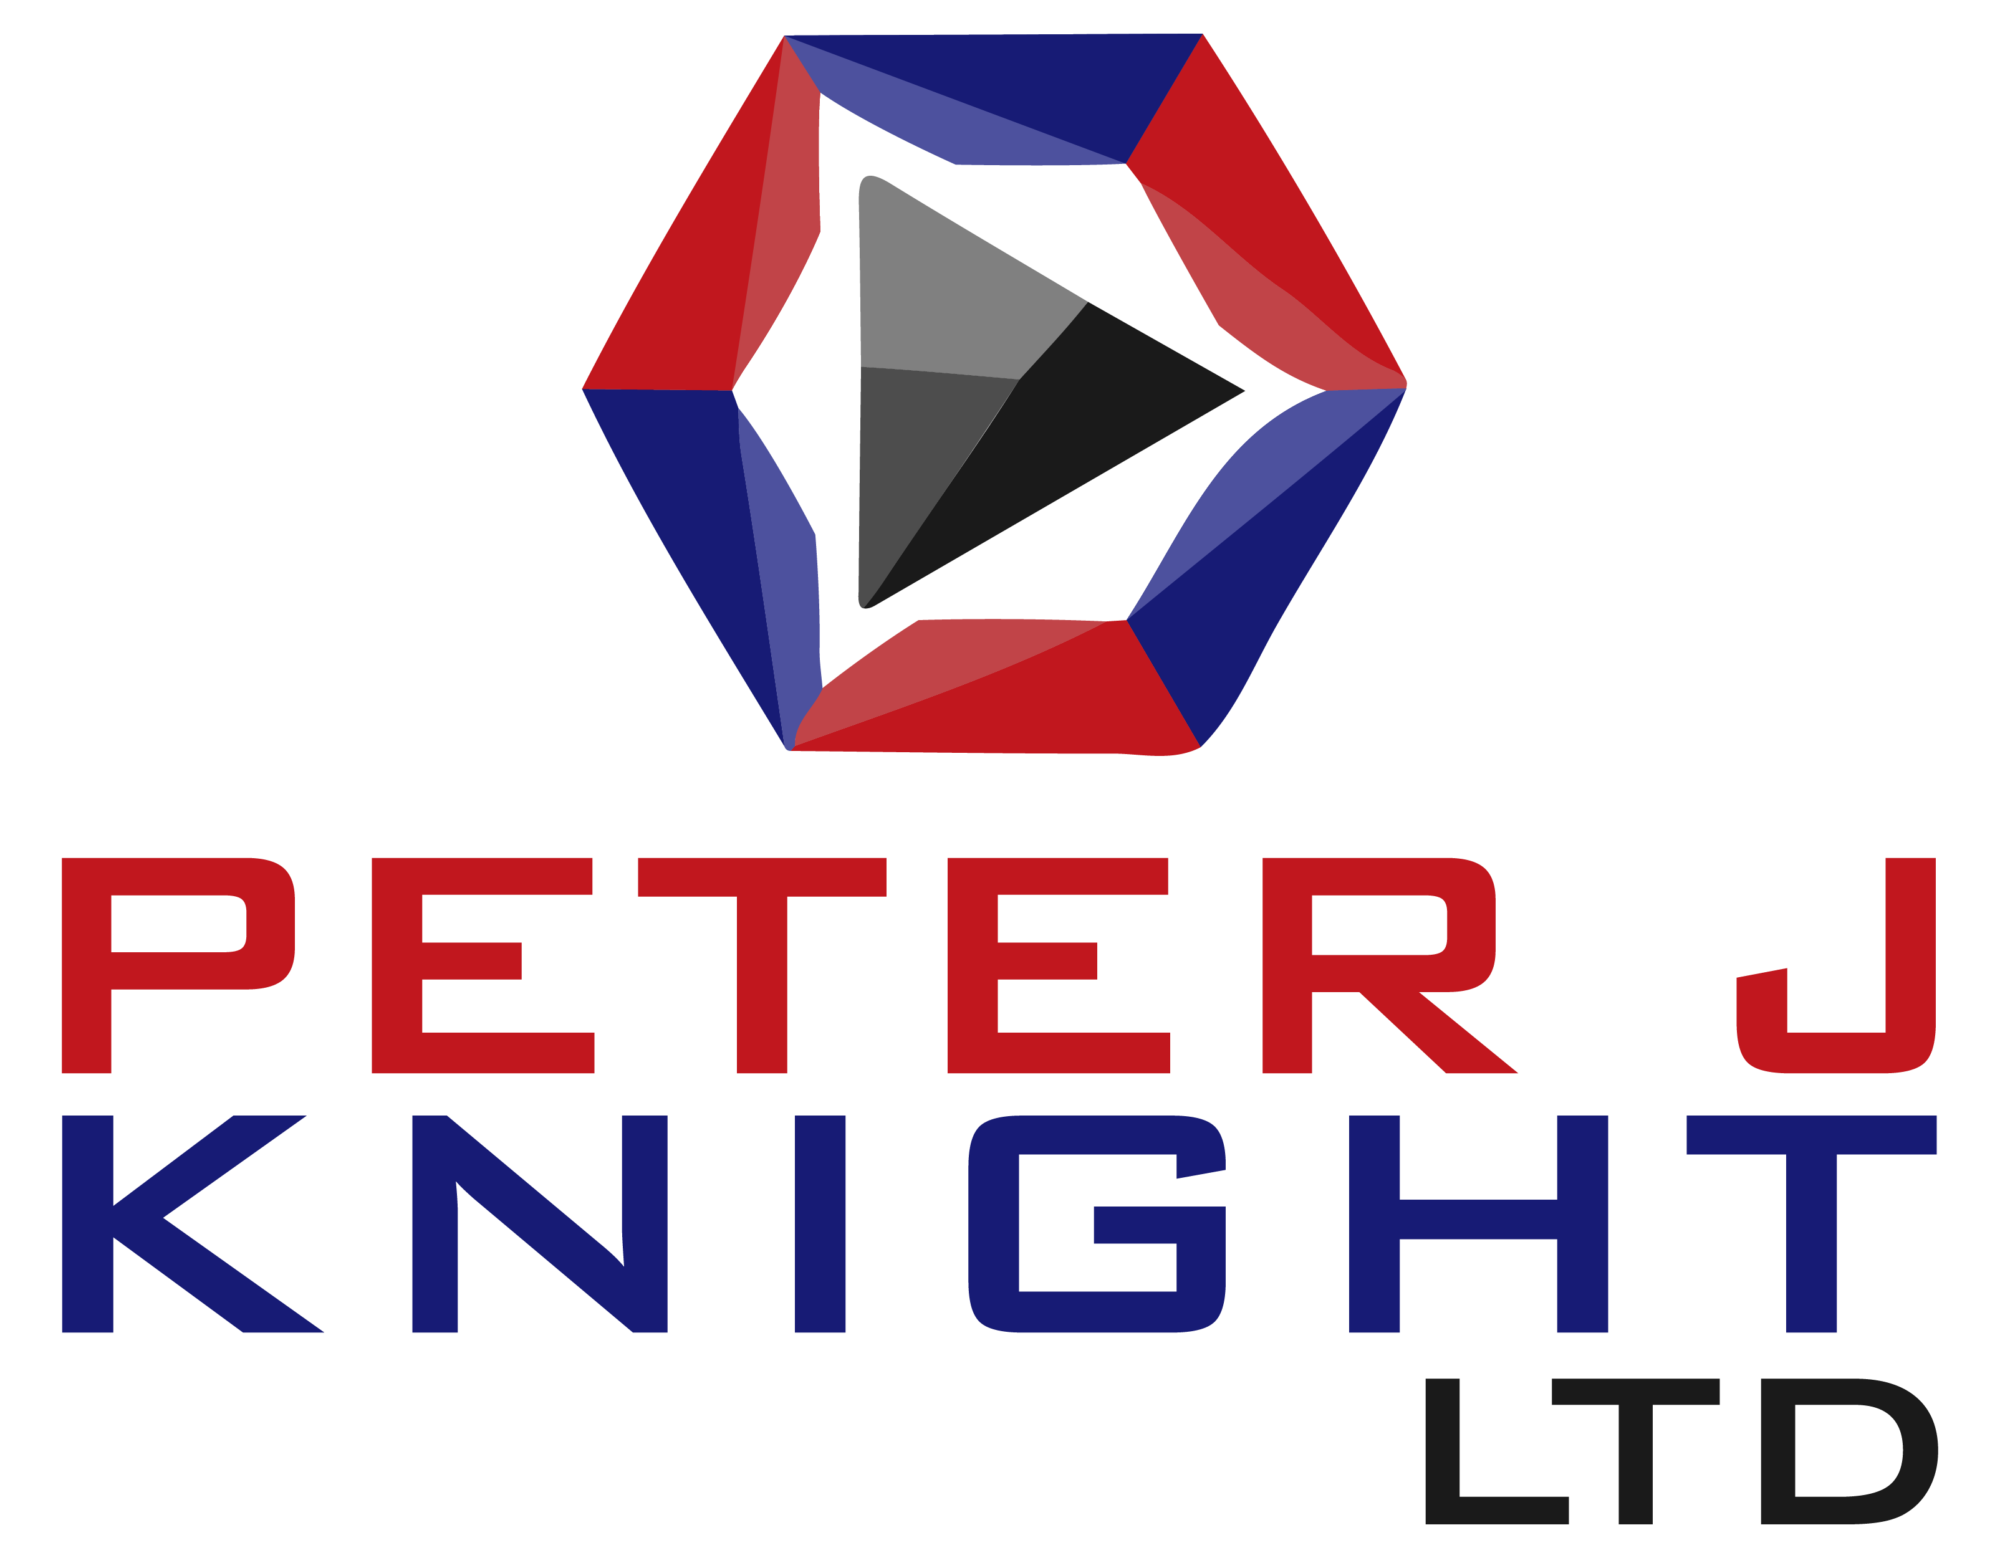 Peter J Knight Ltd